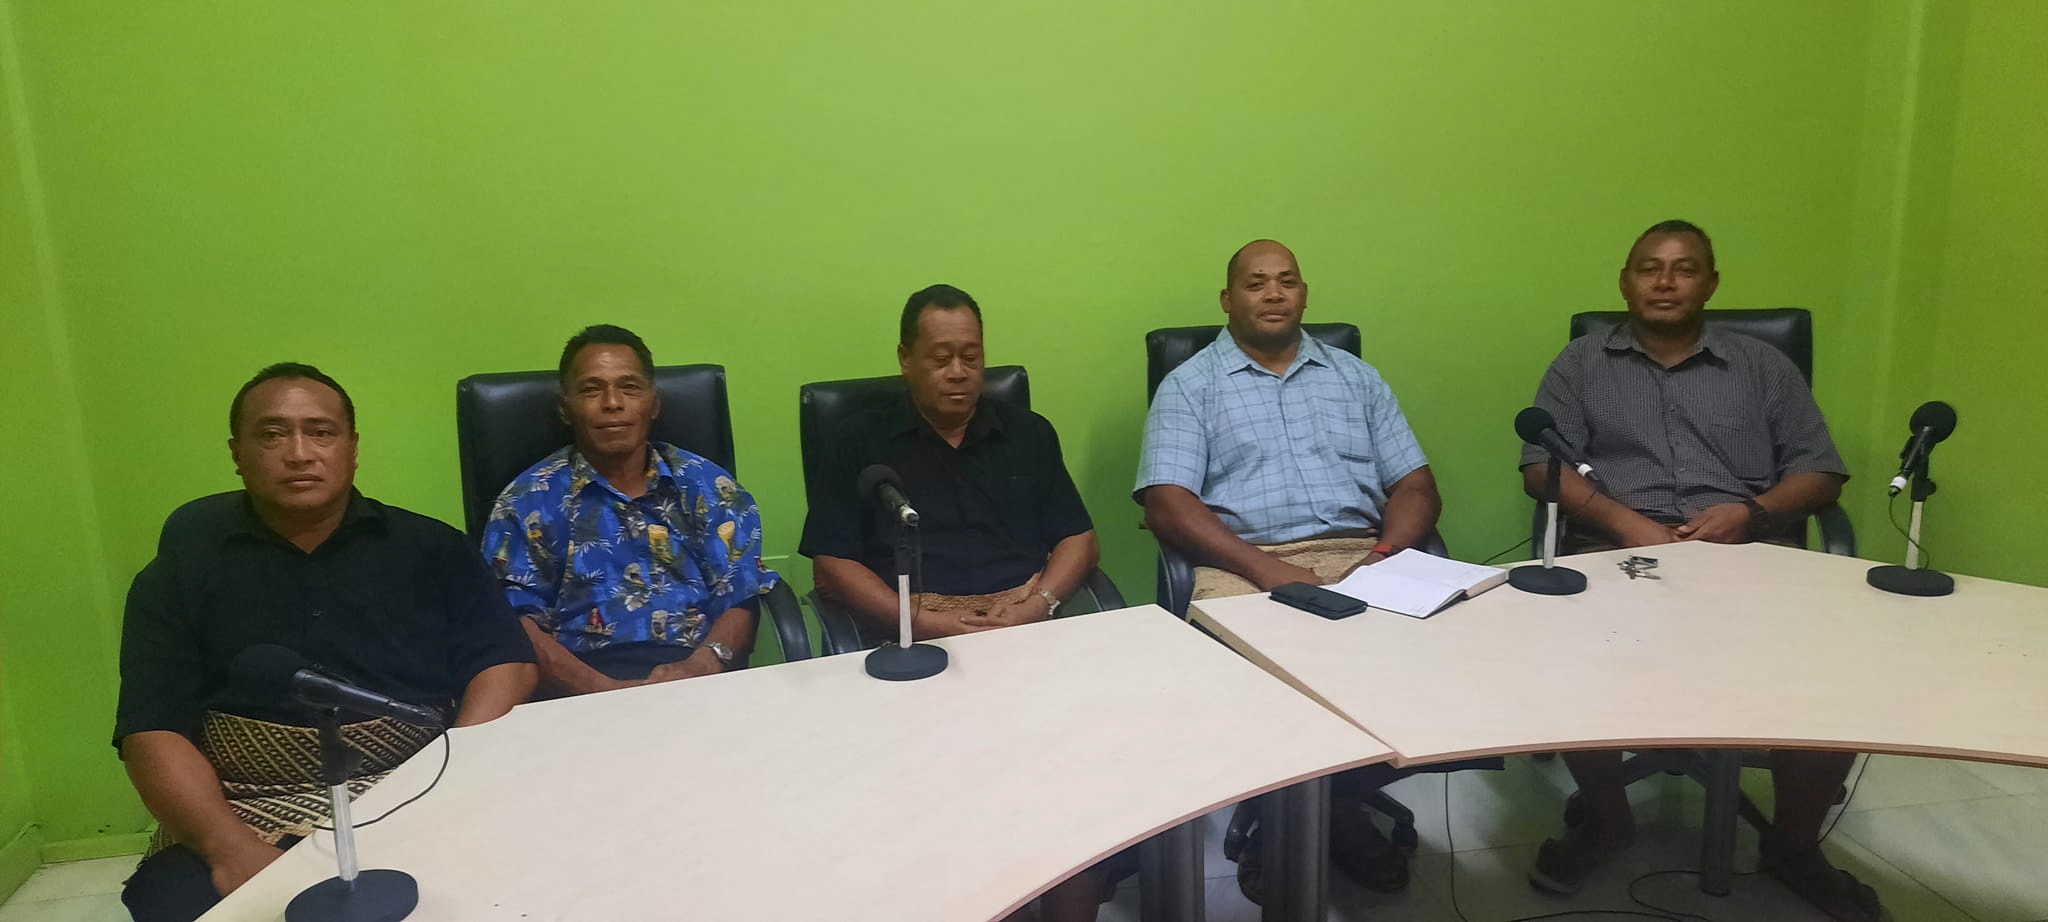 Lisala Folau, sentado segundo desde la izquierda con una camisa azul con dibujos, comparece ante la prensa en Tonga para relatar su historia (Marian Kupu/ Broadcom Broadcasting FM87.5/REUTERS)